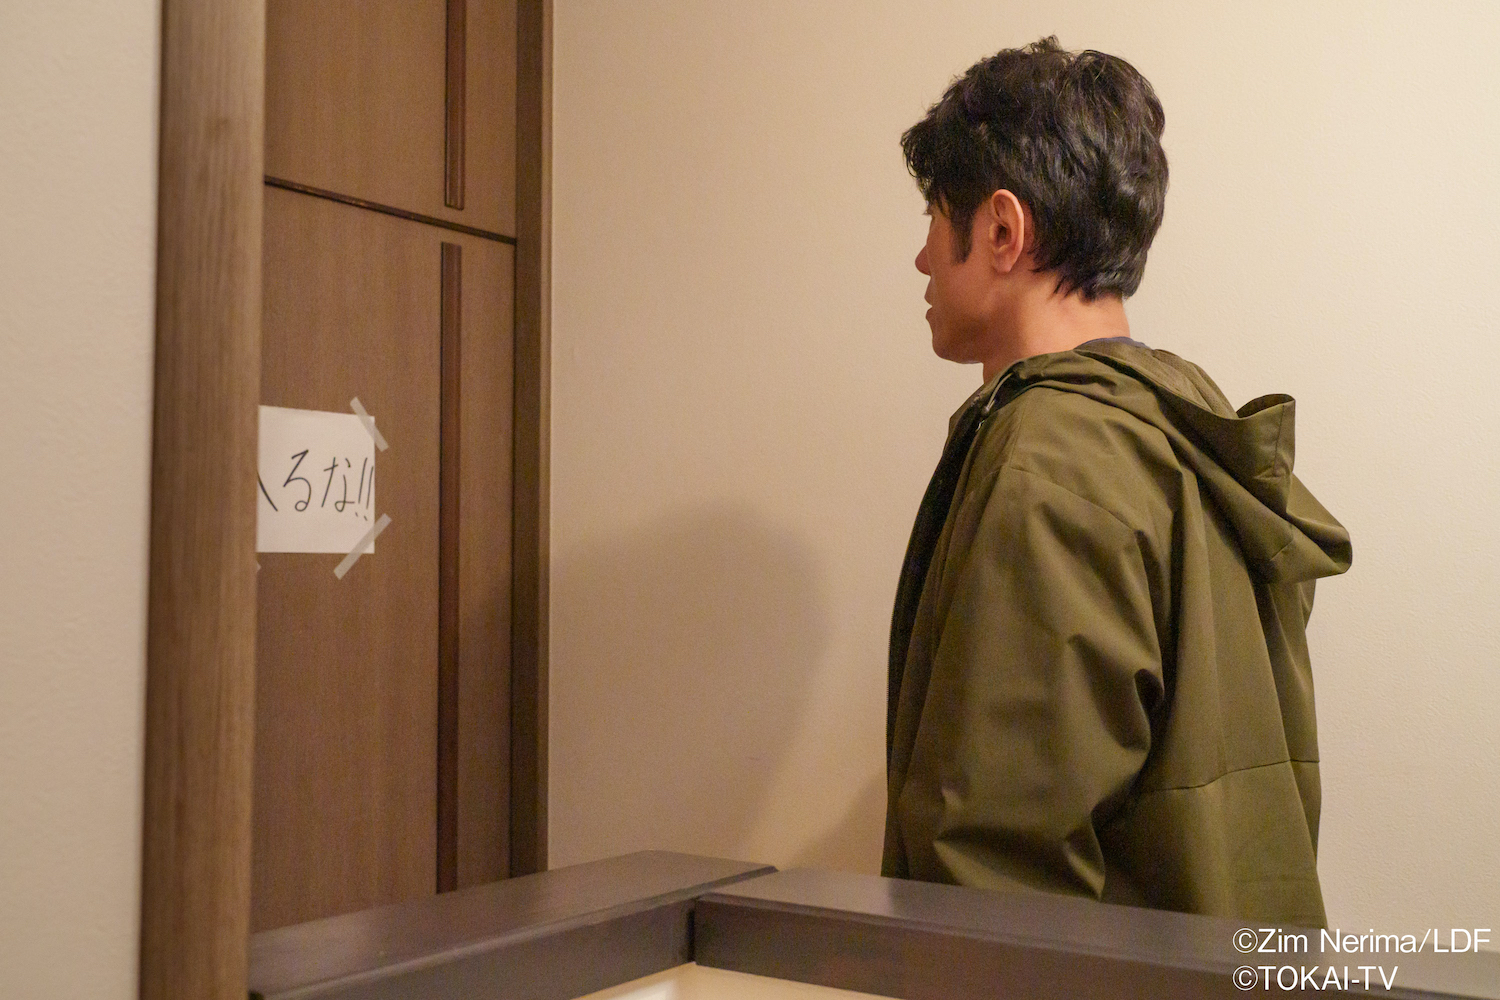 「おっパン」が原田泰造主演で実写化決定 の画像